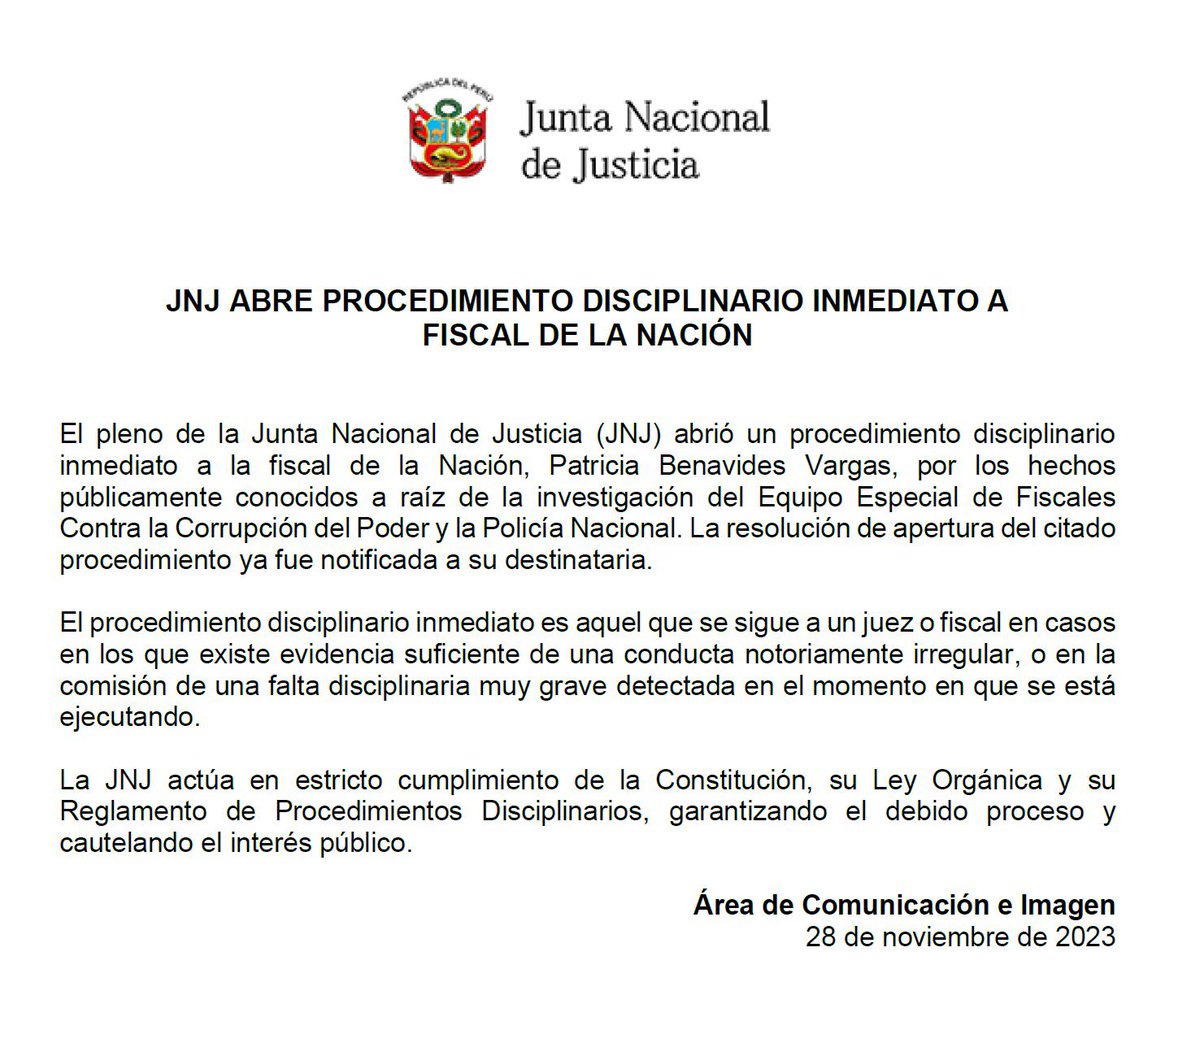 La #JNJ abre proceso disciplinario inmediato contra la fiscal de la Nación, Patricia Benavides. Hoy en @elcomercio_peru adelantamos que este era uno de los escenarios que afrontaba Benavides. vm.tiktok.com/ZM6eaXNsJ/